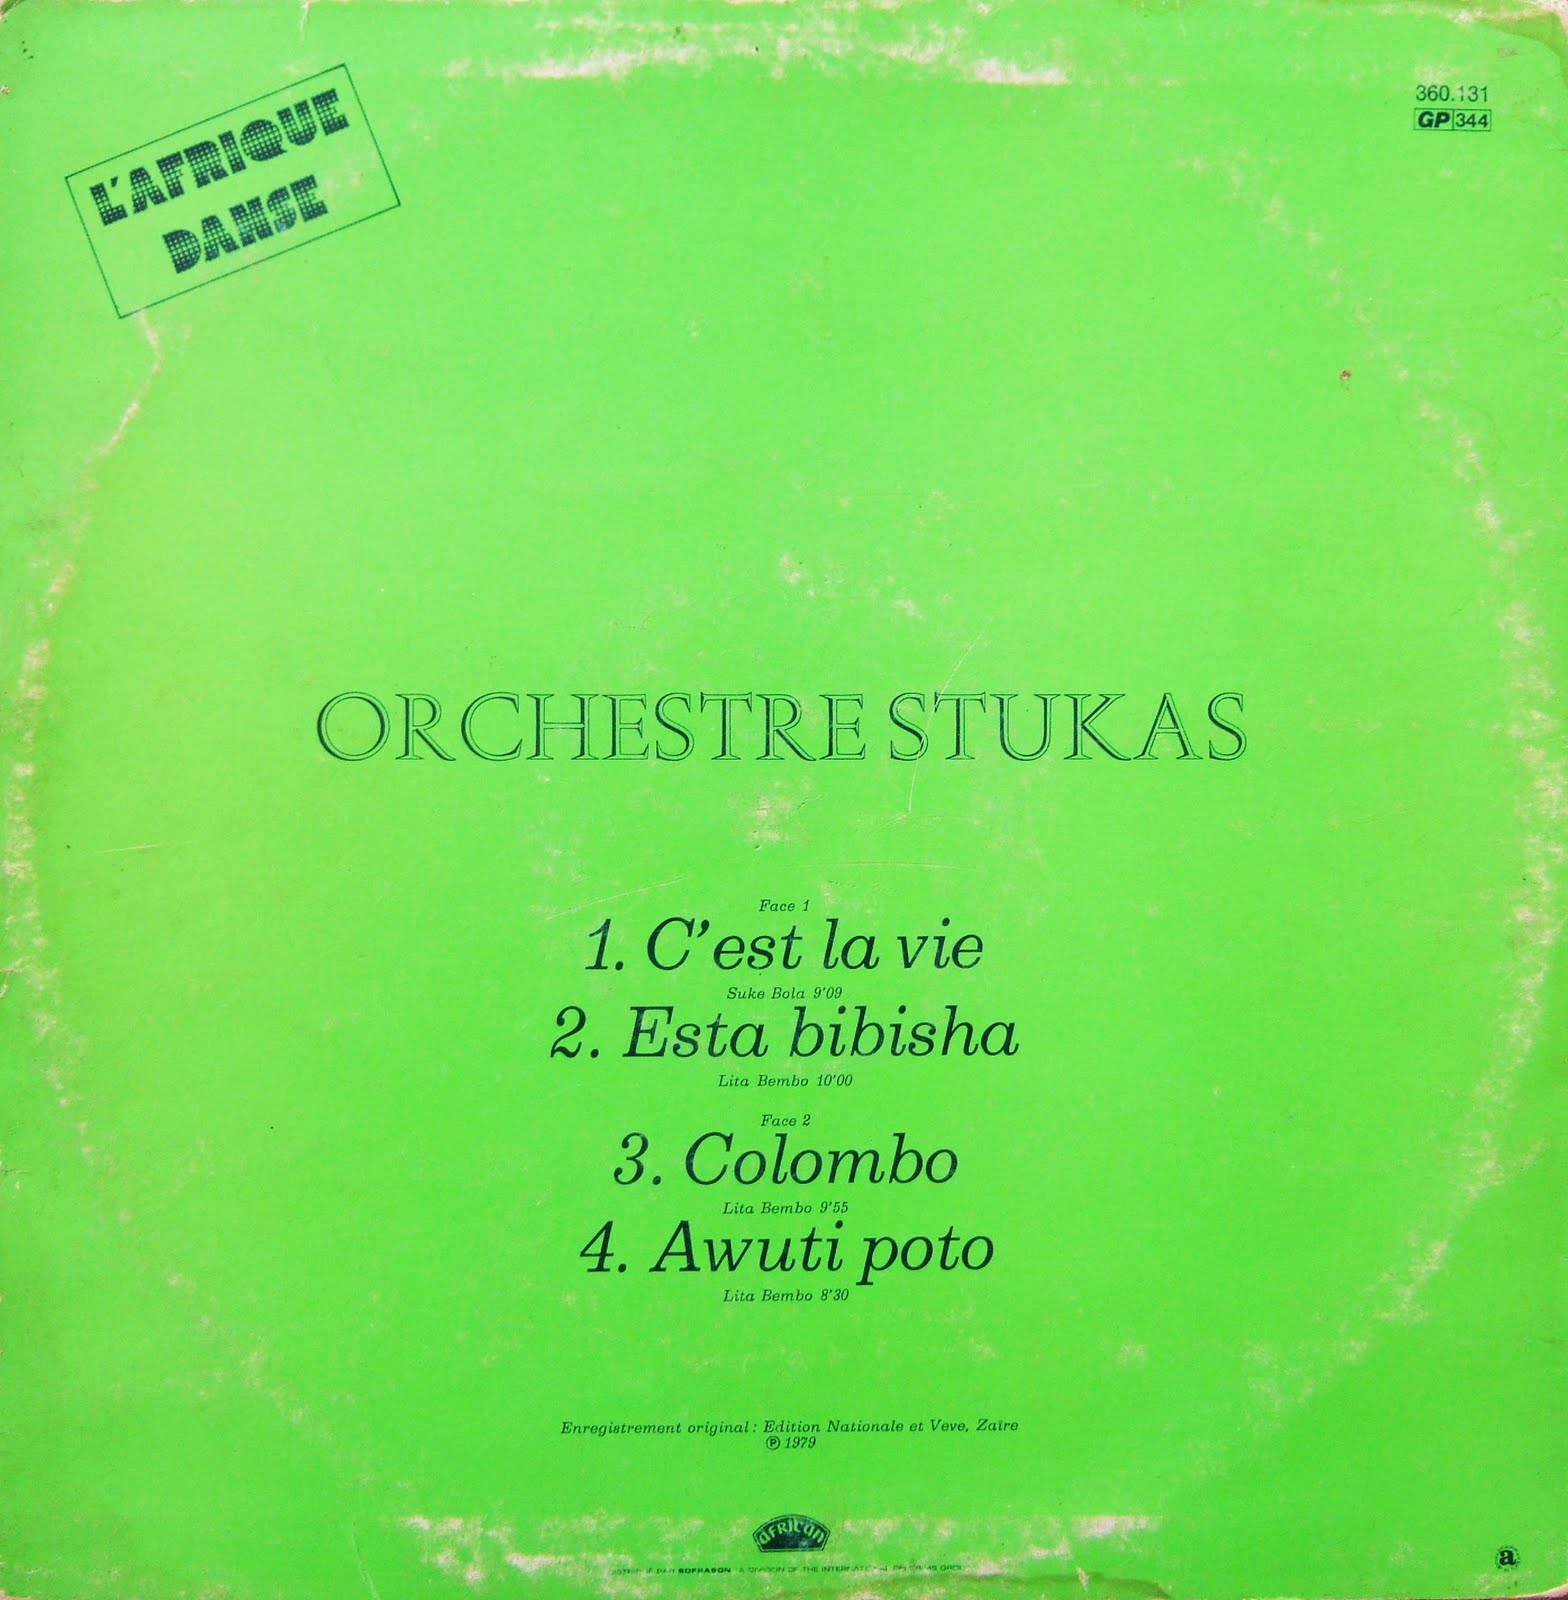   L'Afrique Danse Presents Orchestre Stukas (1976)  DSCF4233